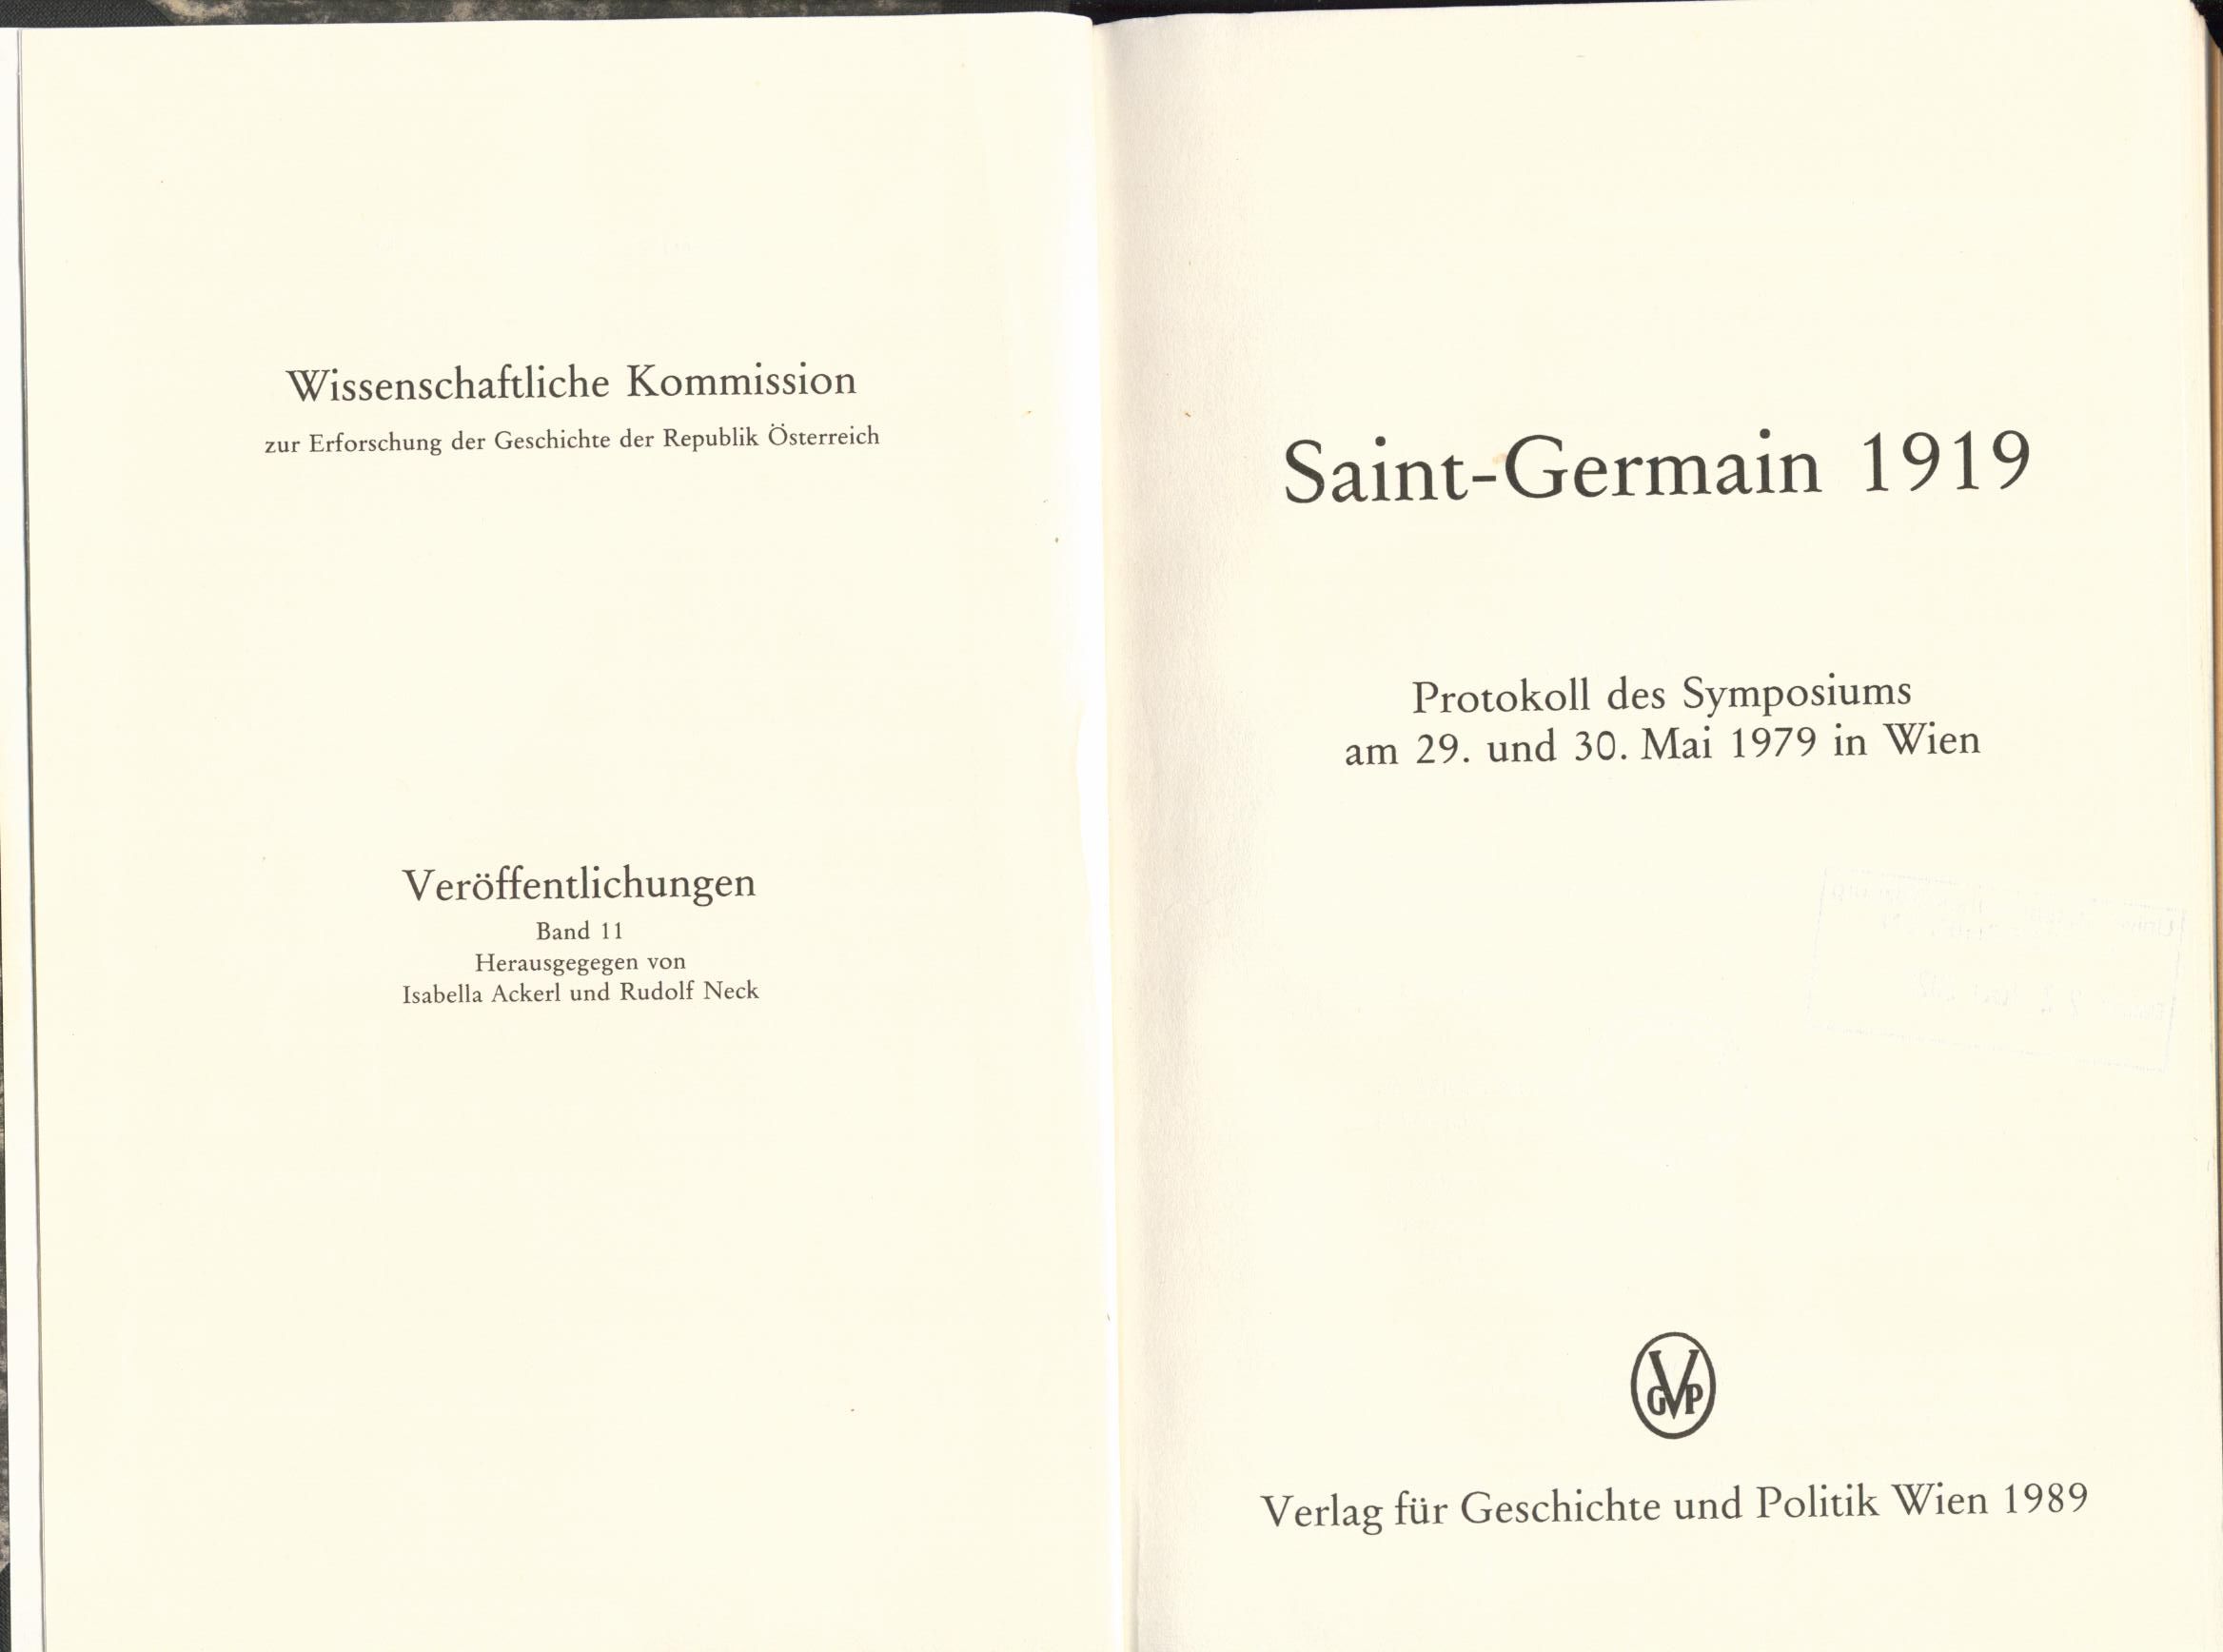 Saint-Germain 1919 Protokoll des Symposiums am 29. und 30. Mai 1979 in Wien - Ackerl, Isabella